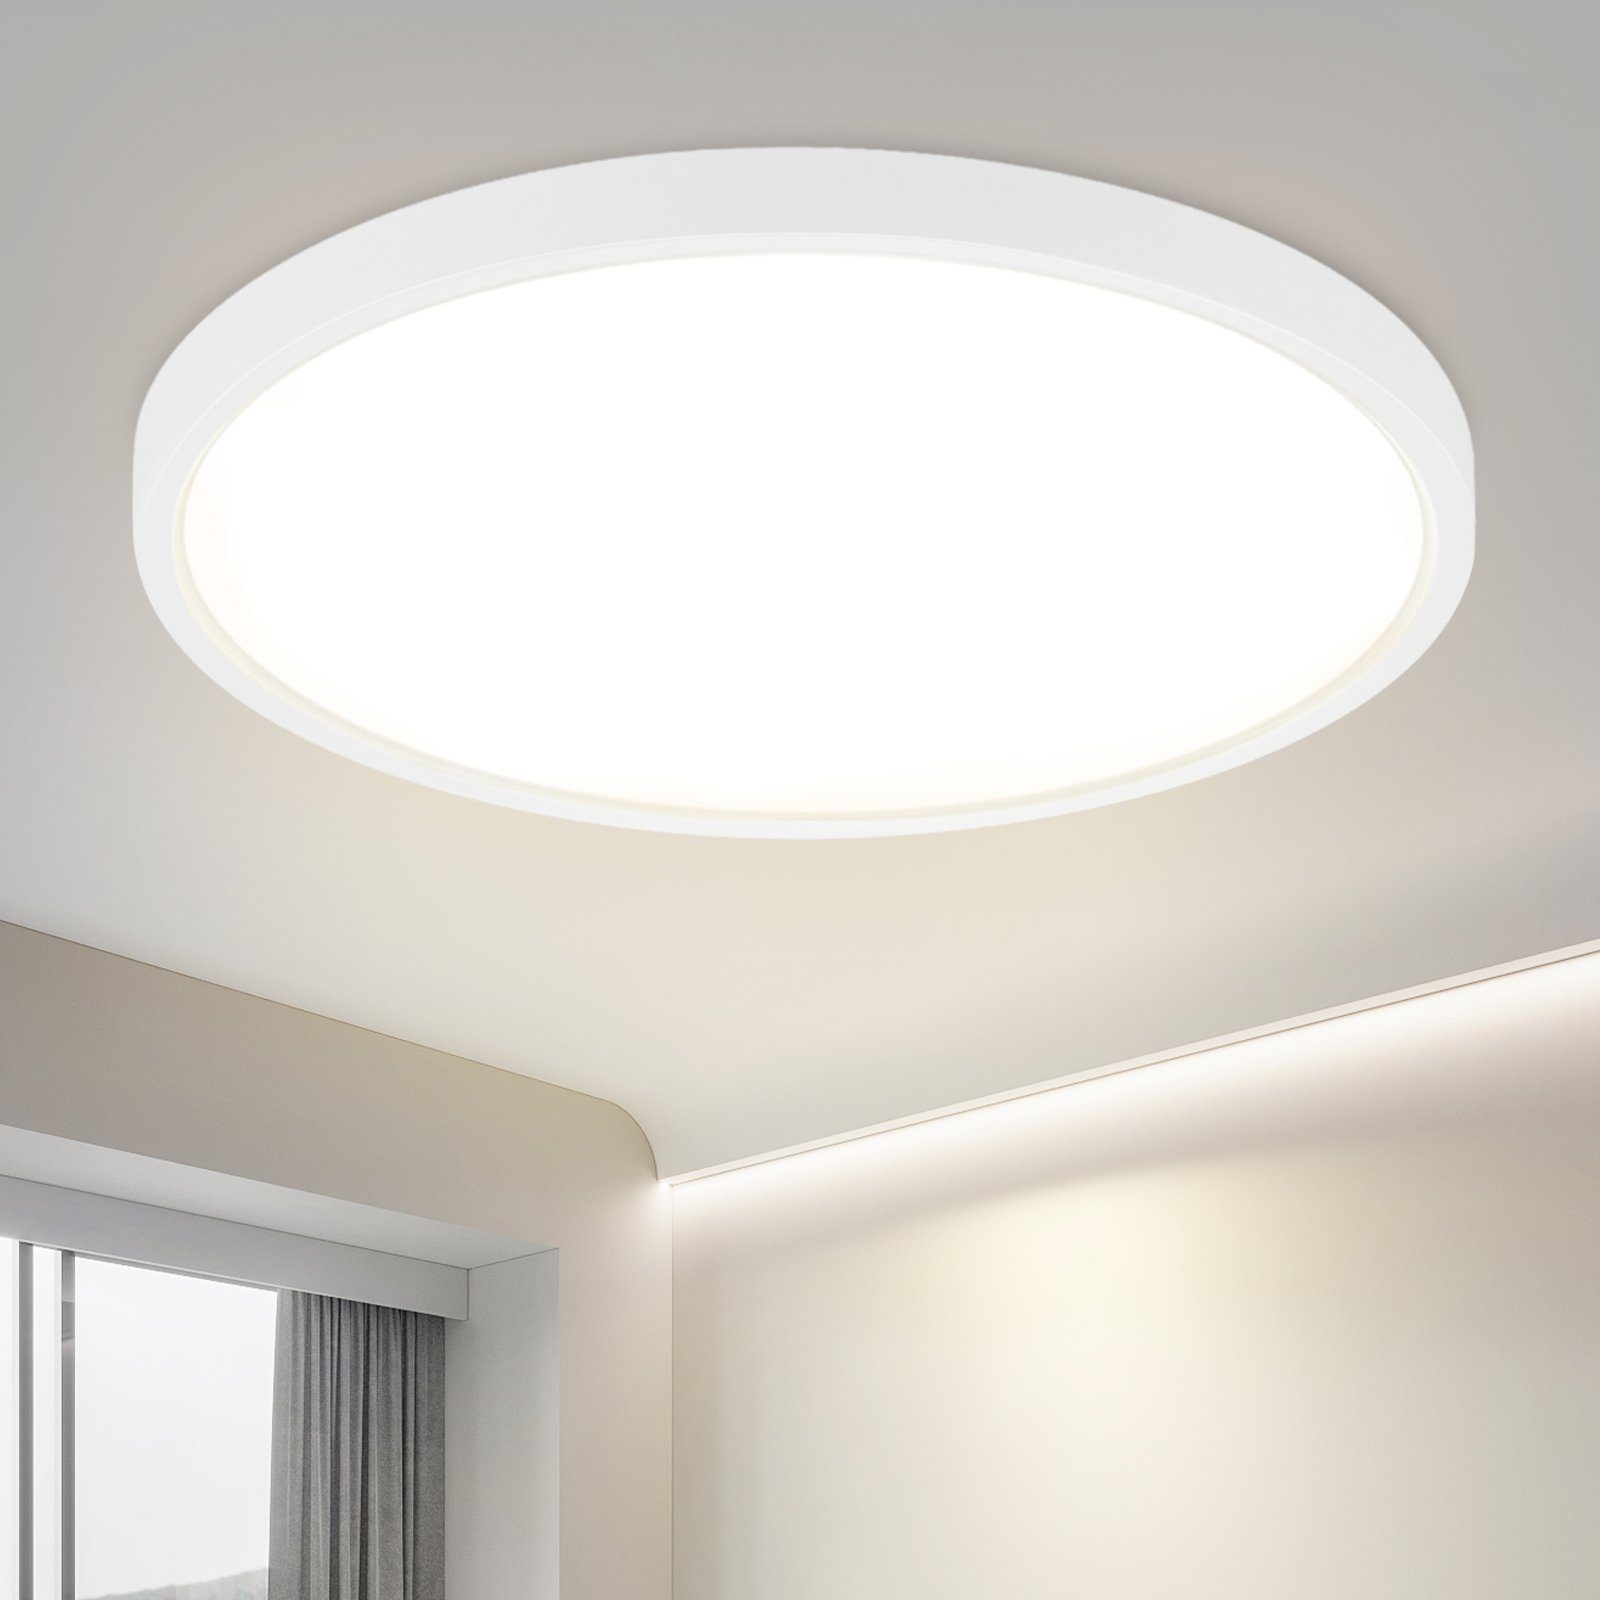 ZMH LED Deckenleuchte Schwarz/Weiß Rund Deckenlampe 24W Flach für Flur Wohnzimmer, LED fest integriert, 4000k, Ø30CM, Badezimmer, für Bad Küche, Weiß